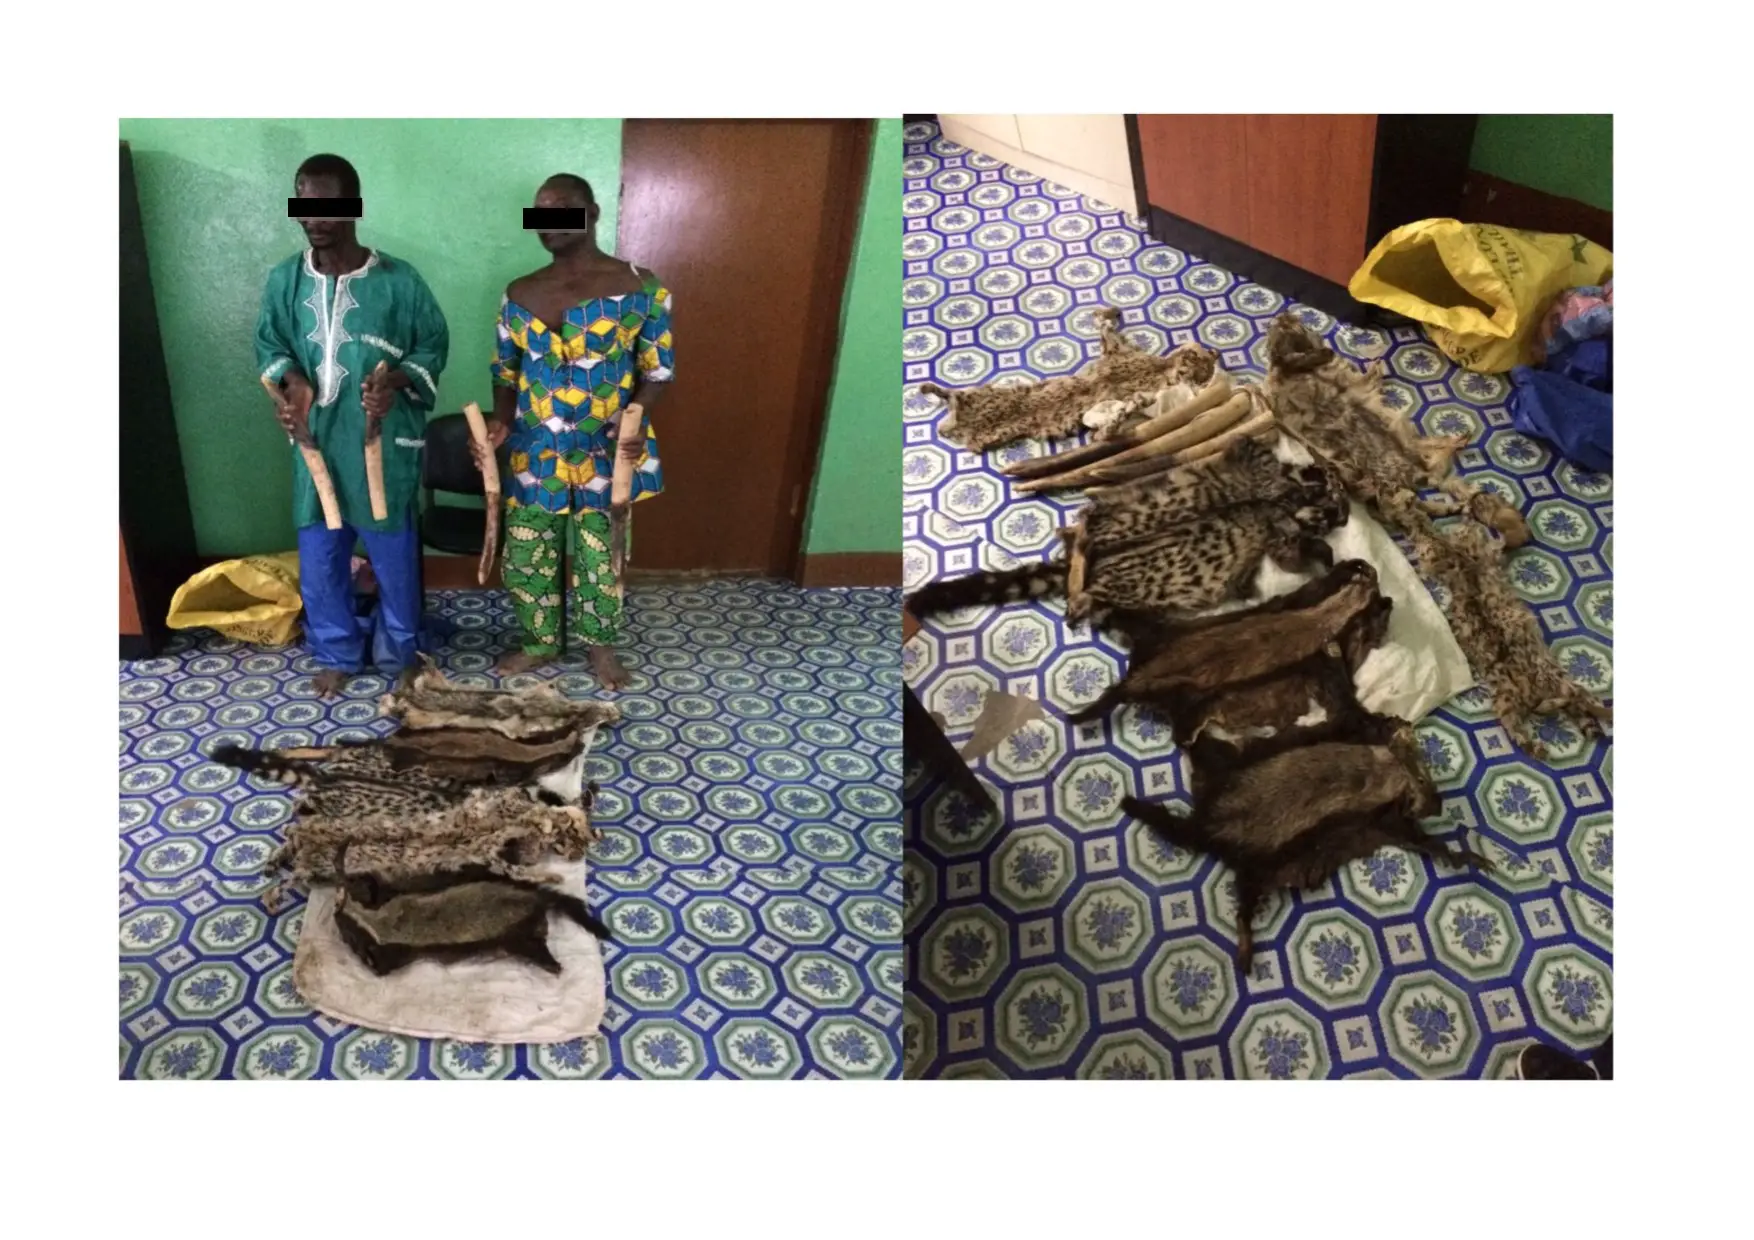 Deux individus arrêtés avec des pointes d'ivoires et des peaux d'espèces protégées au Togo